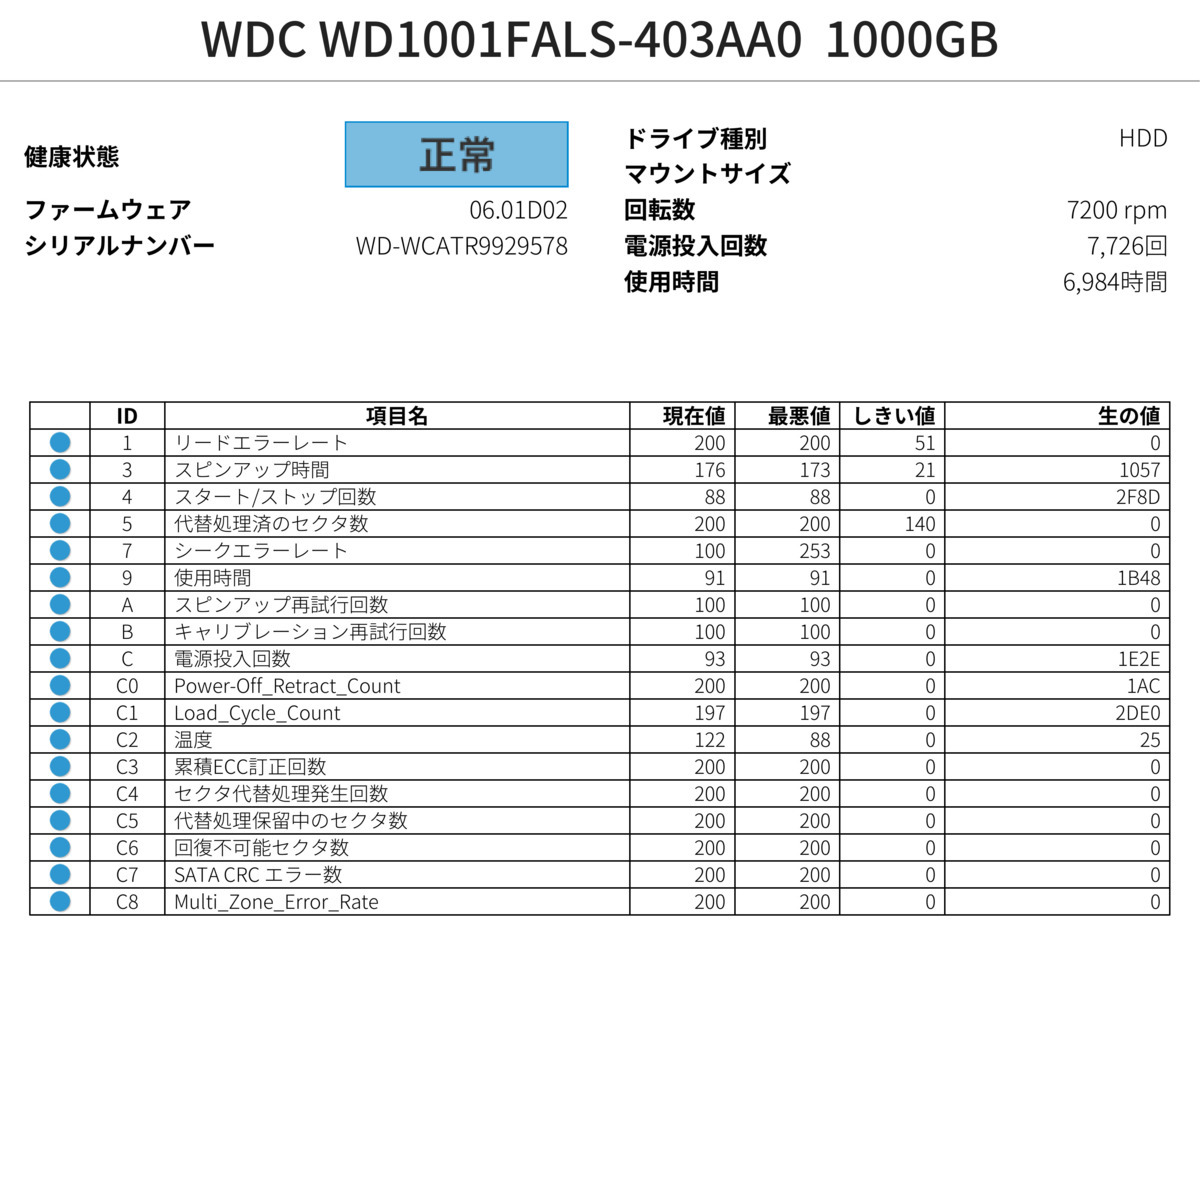 動作確認済み 6984時間 WDC WD1001FALS-403AA0 1000GB SATA 内蔵 HDD ハードディスクドライブ SMART正常 消去済み_画像4